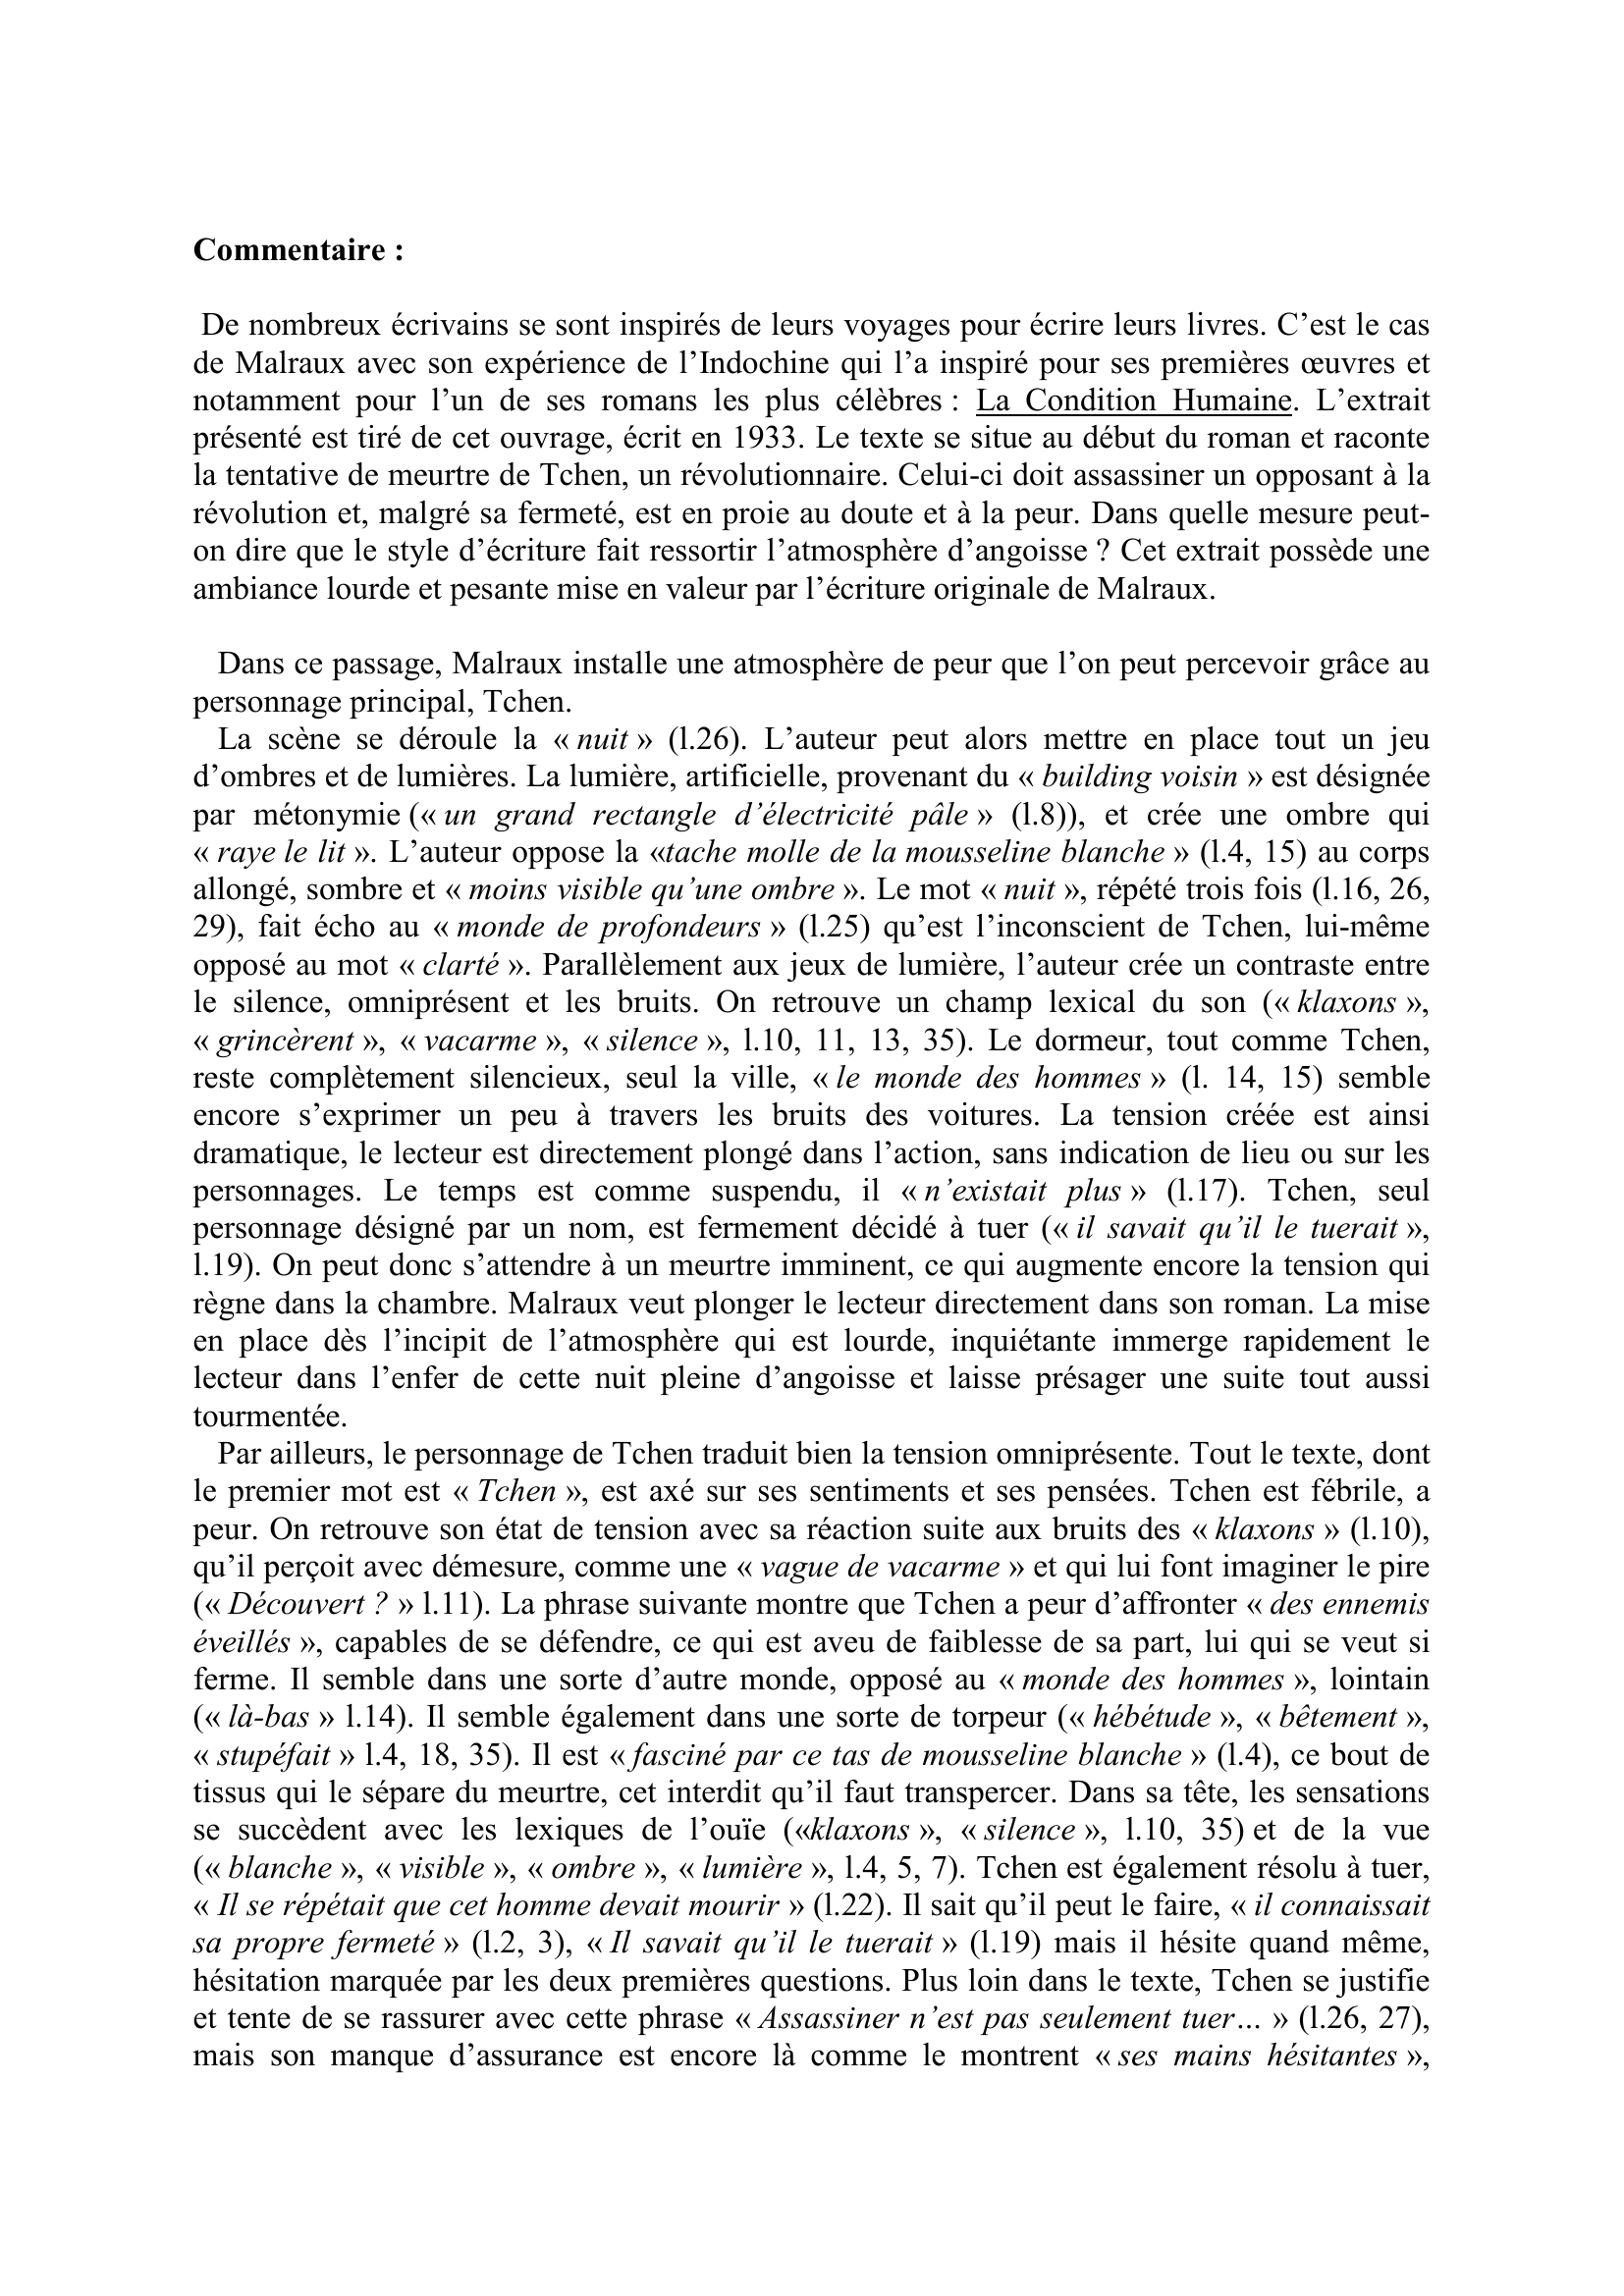 Prévisualisation du document Commentaire composé  La Condition Humaine, Malraux (incipit)